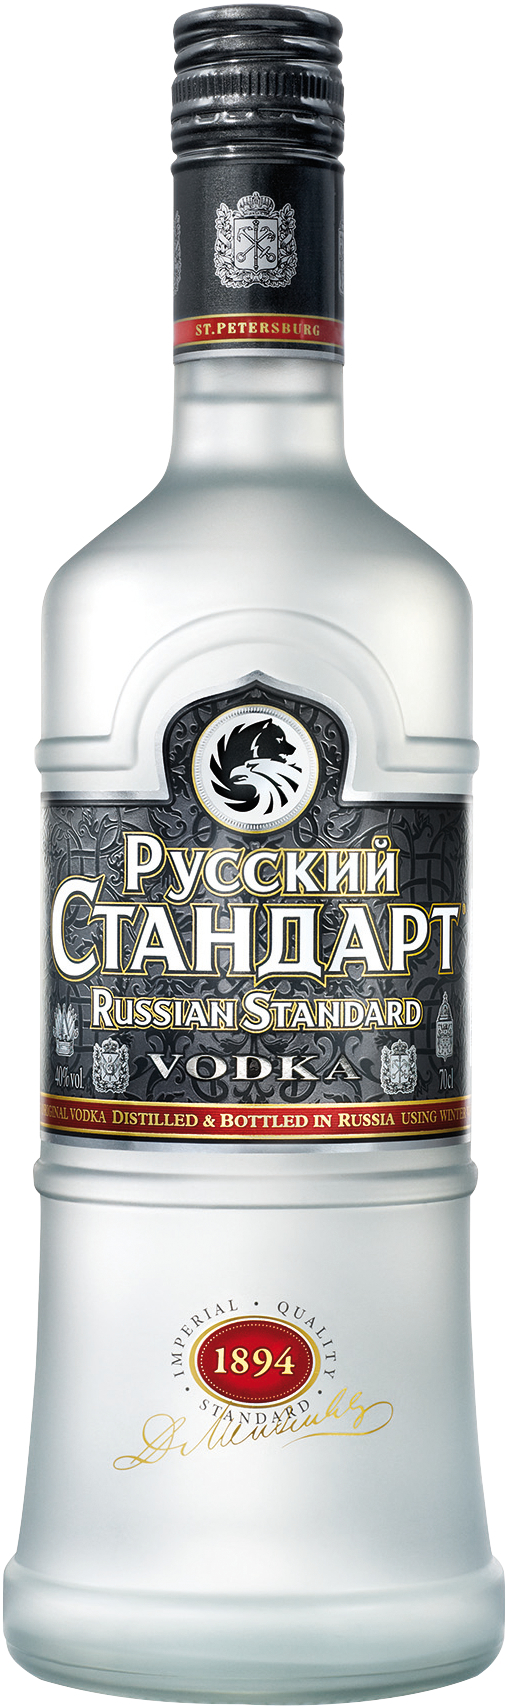 Russian Standard Vodka 40% Vol.  1 x 0,7 l (Glas)